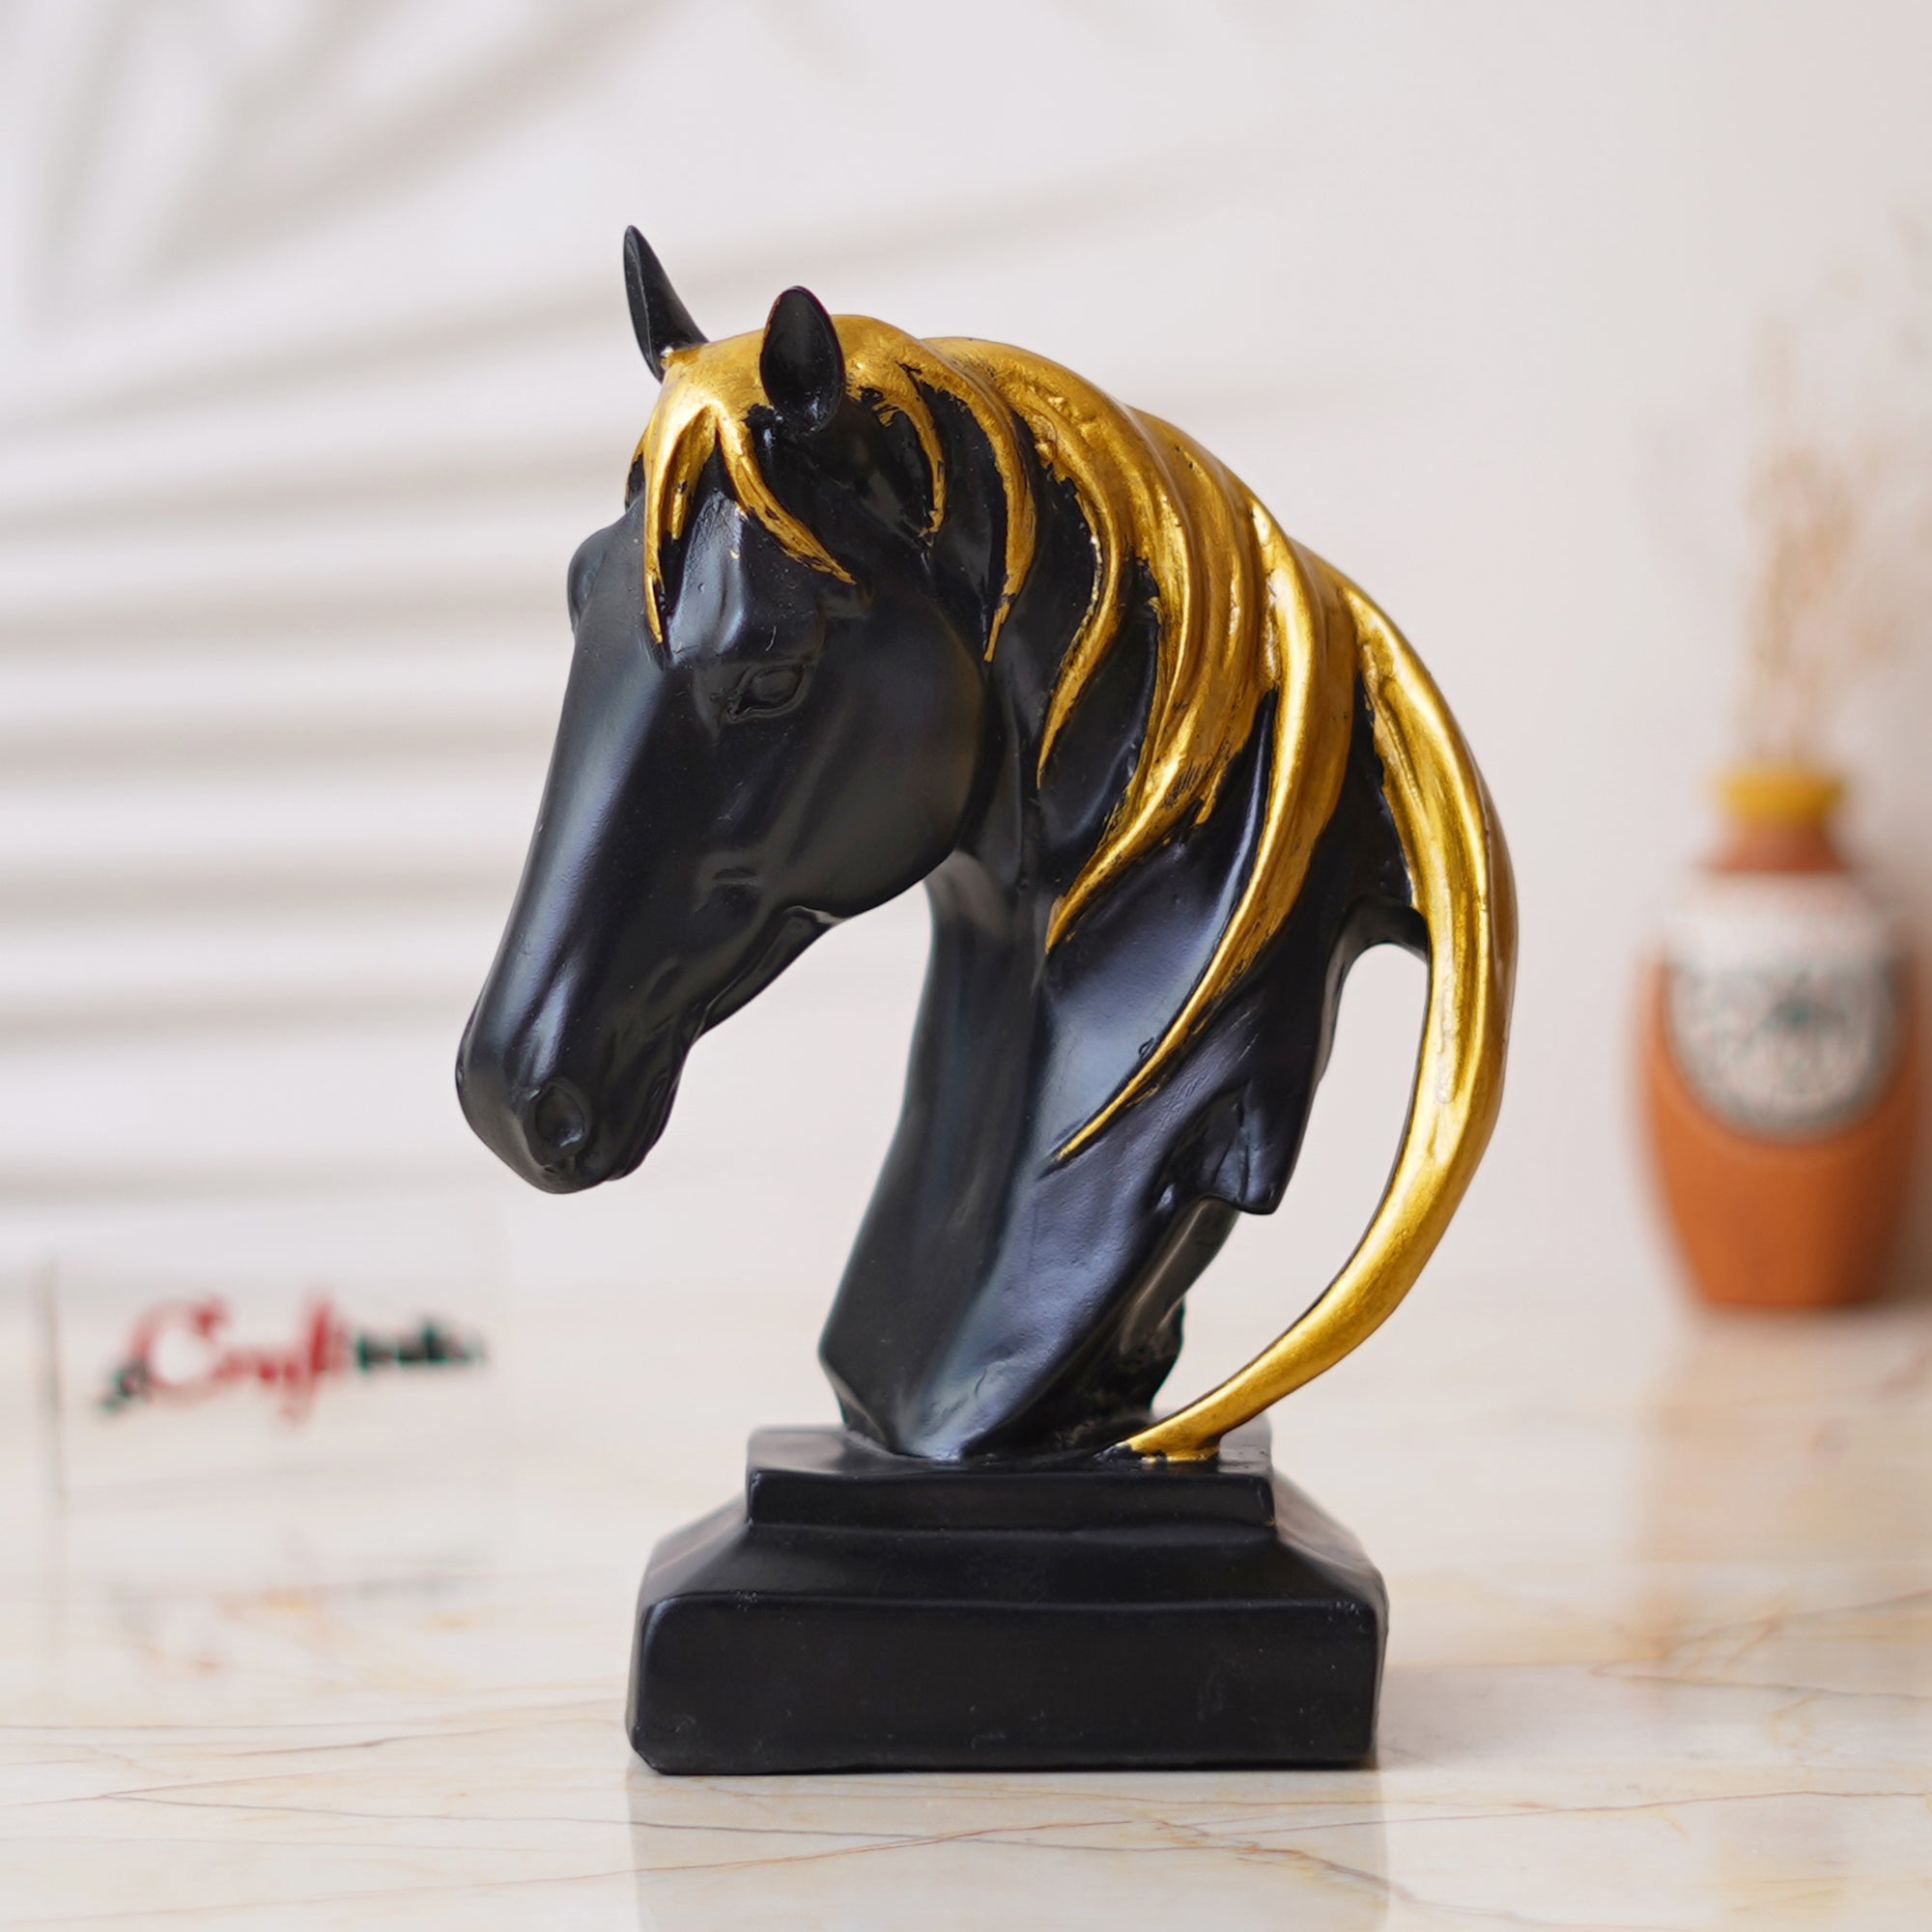 Black Horse Head Statue with Golden Hair Animal Figurine Showpiece